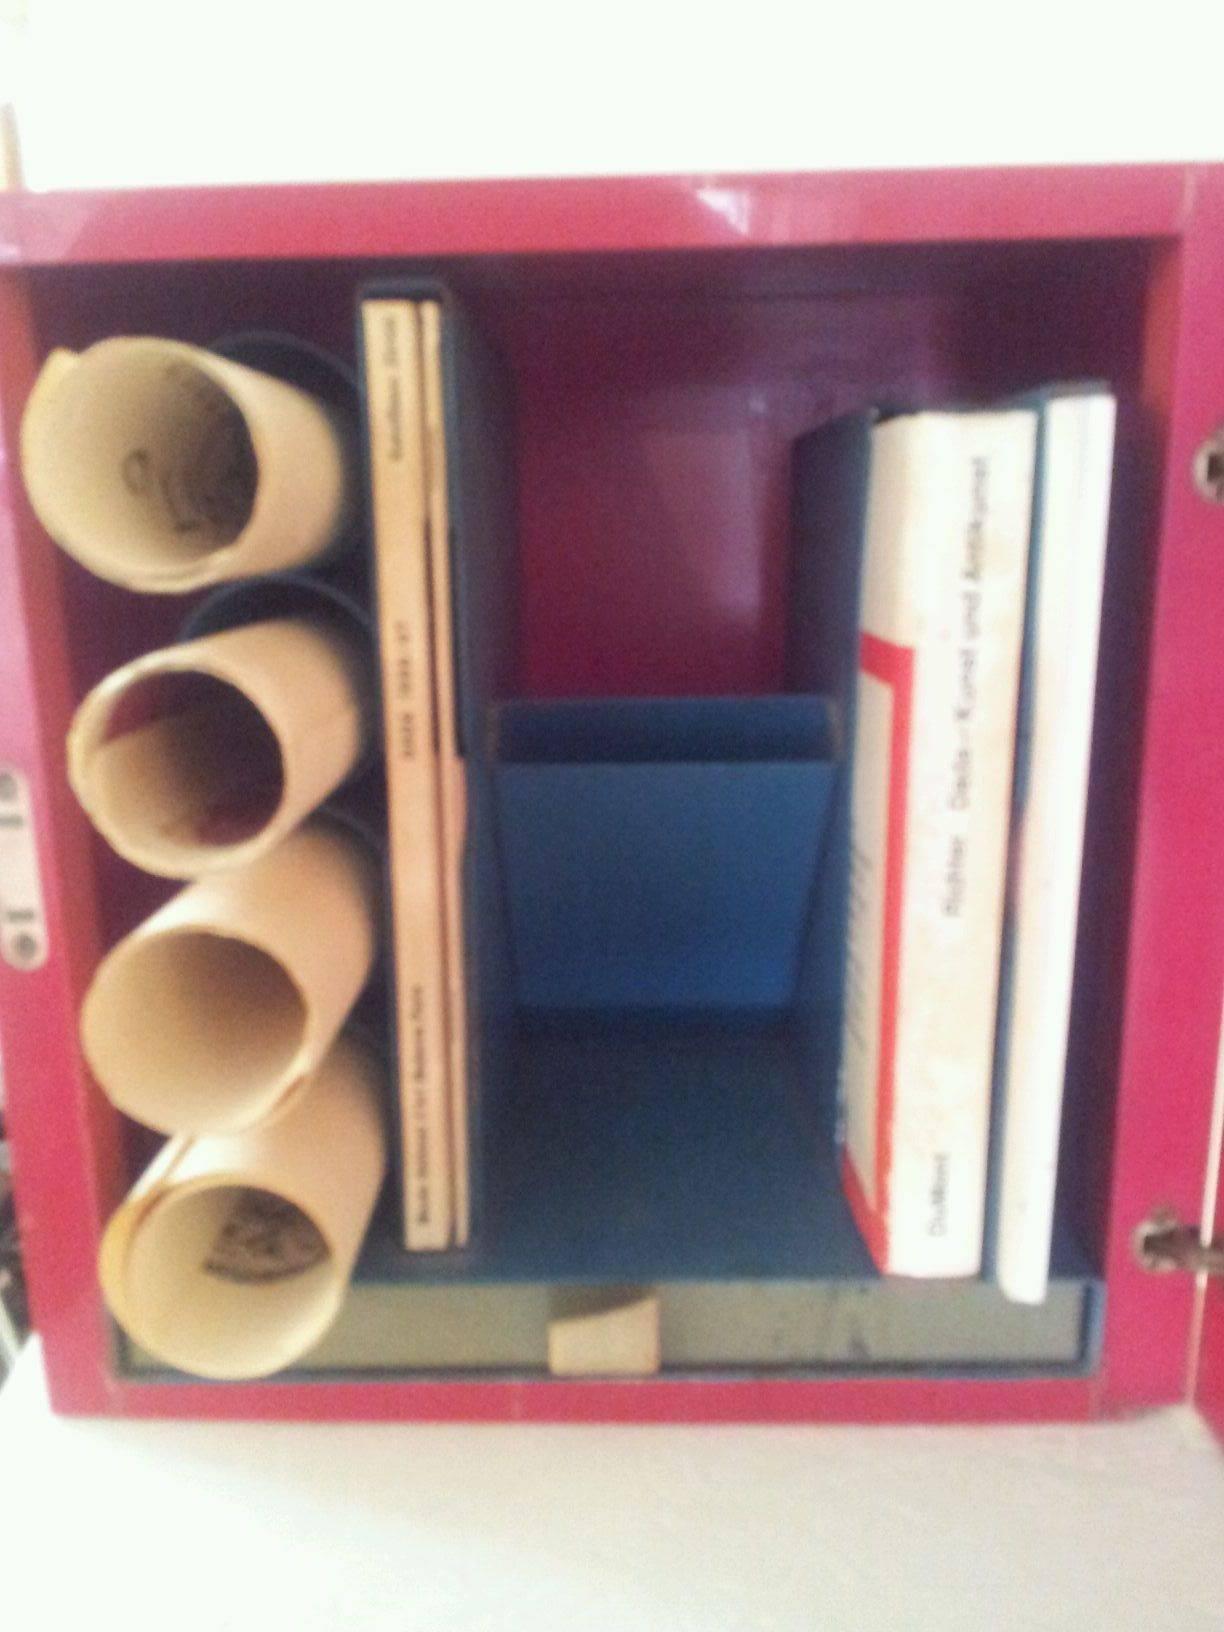 Rote Plexiglasbox inkl. 4 Lithos, 4 Bücher, Foto und Artikel, 30x30cm, 30X30X30 cm. Rote Plexiglasschachtel mit: Ein Buch von Hans Richter, Dada Kunst und Antikunst, 2. ein Artikel in einer Schweizer Zeitung vom Februar 1966, 50 Jahre Dada, 3. 50